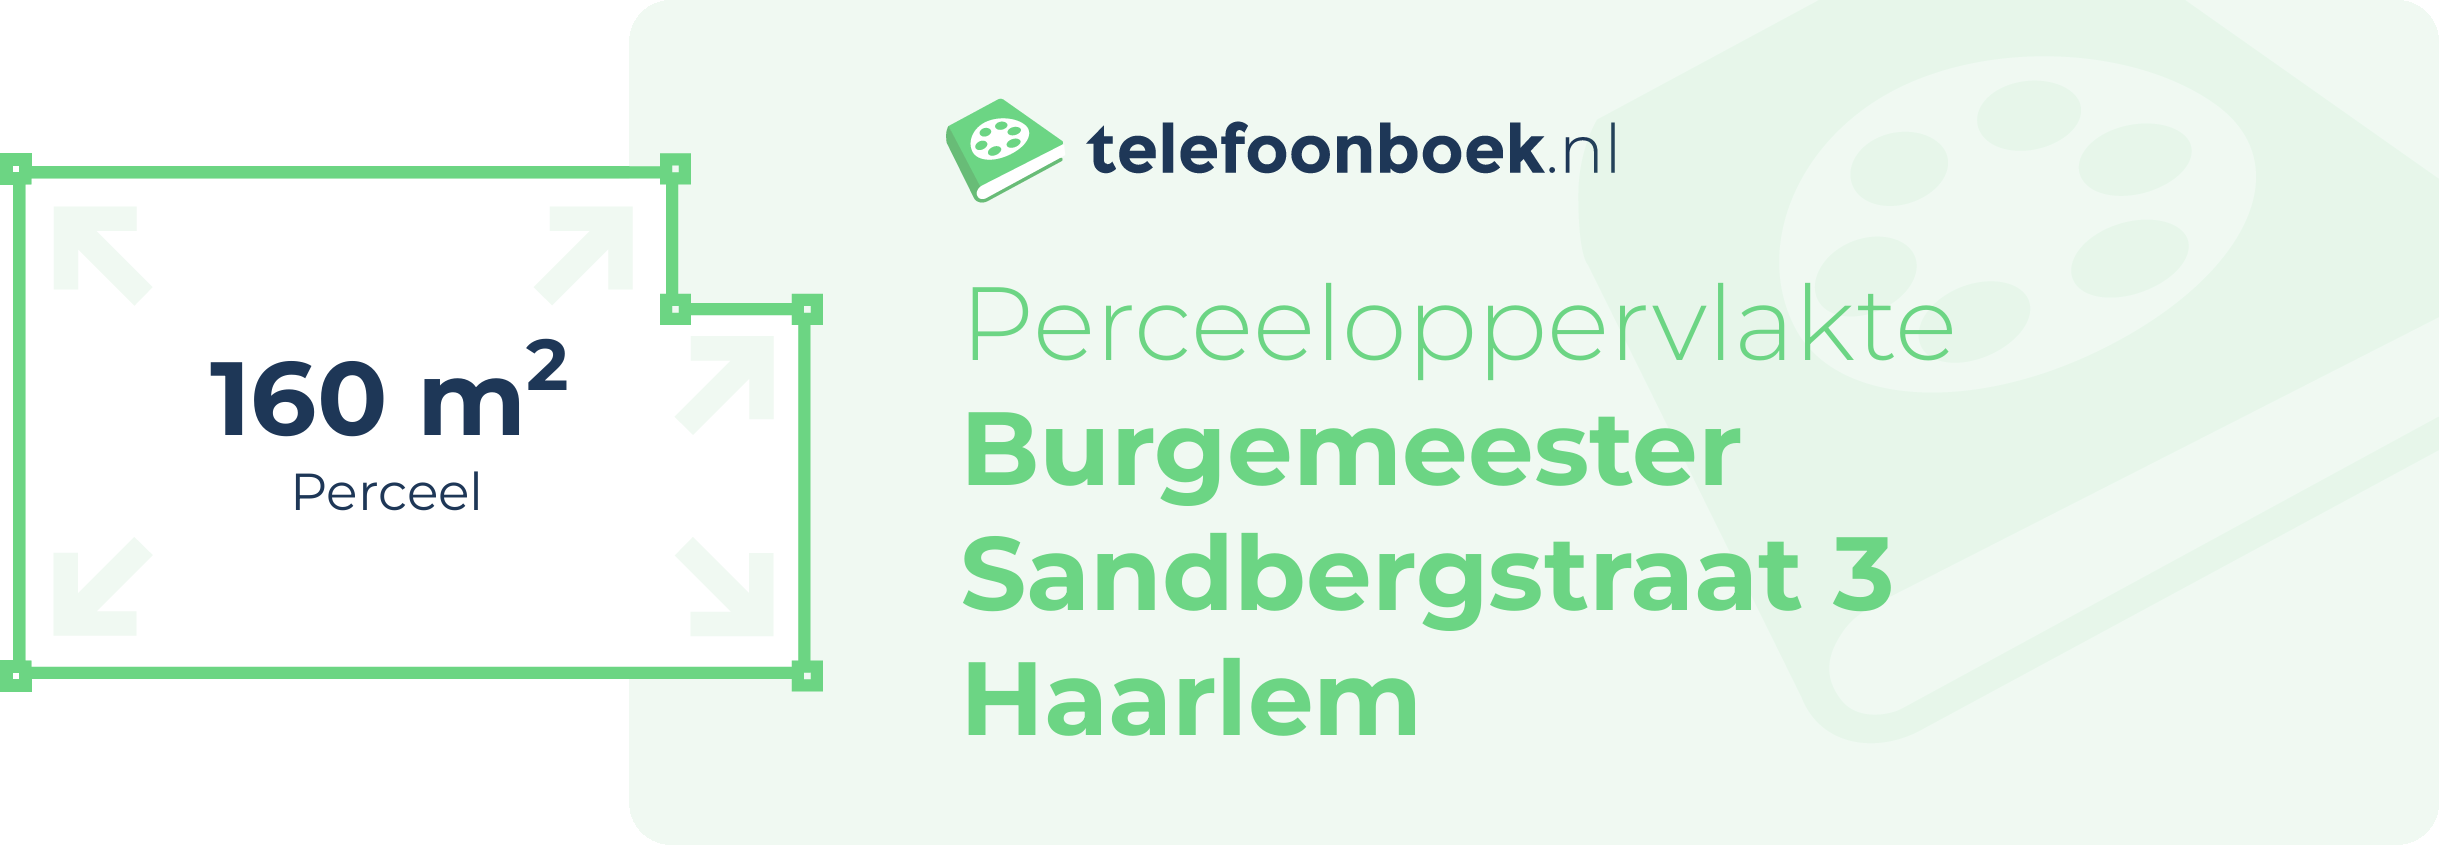 Perceeloppervlakte Burgemeester Sandbergstraat 3 Haarlem